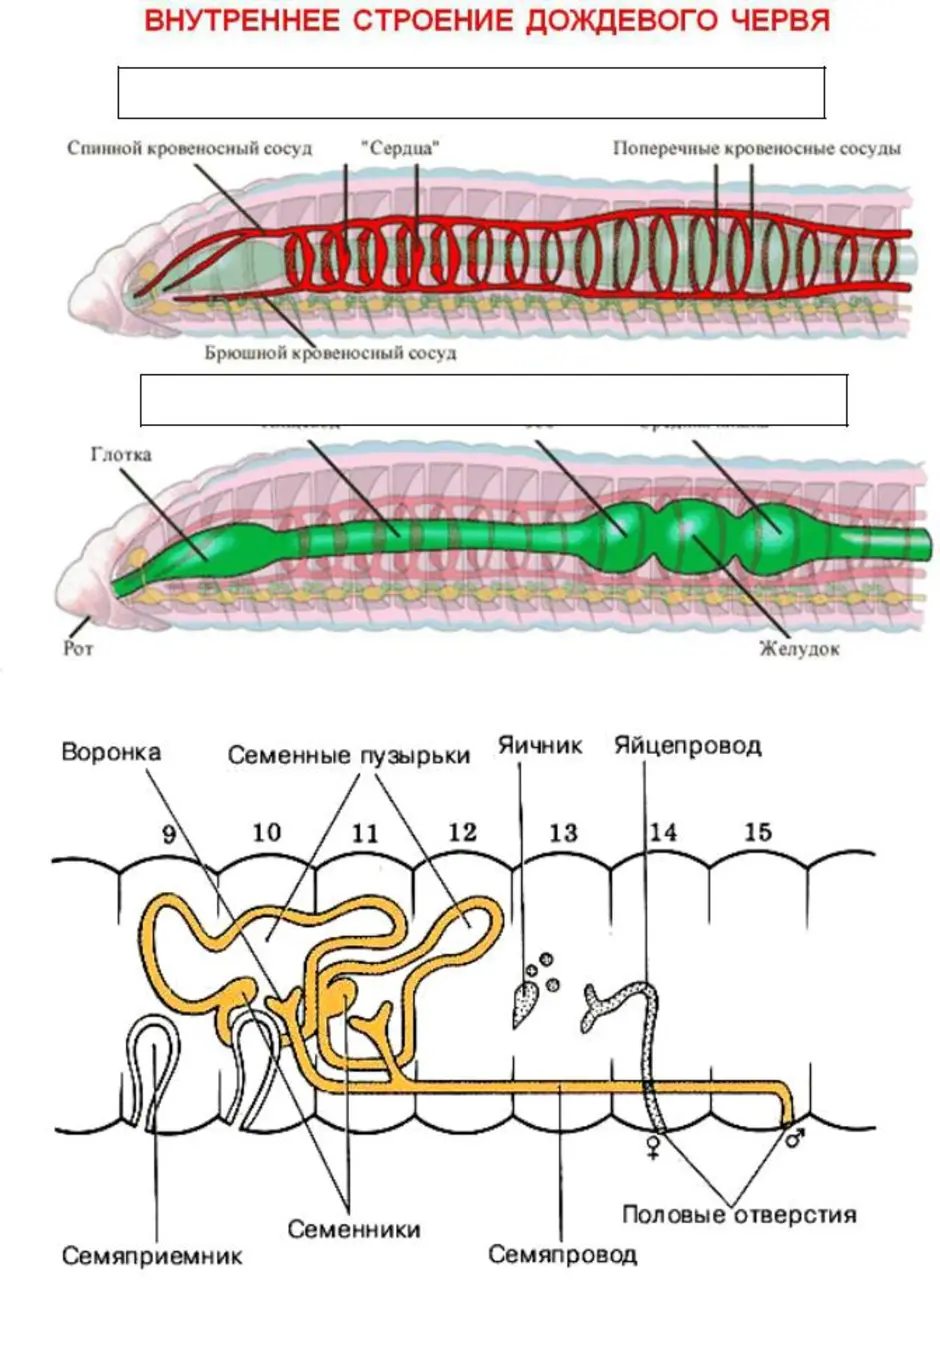 Дыхание дождевого червя. Строение половой системы дождевого червя. Системы дождевого червя таблица. Кольчатый червь строение половой системы. Половая система кольчатых червей.